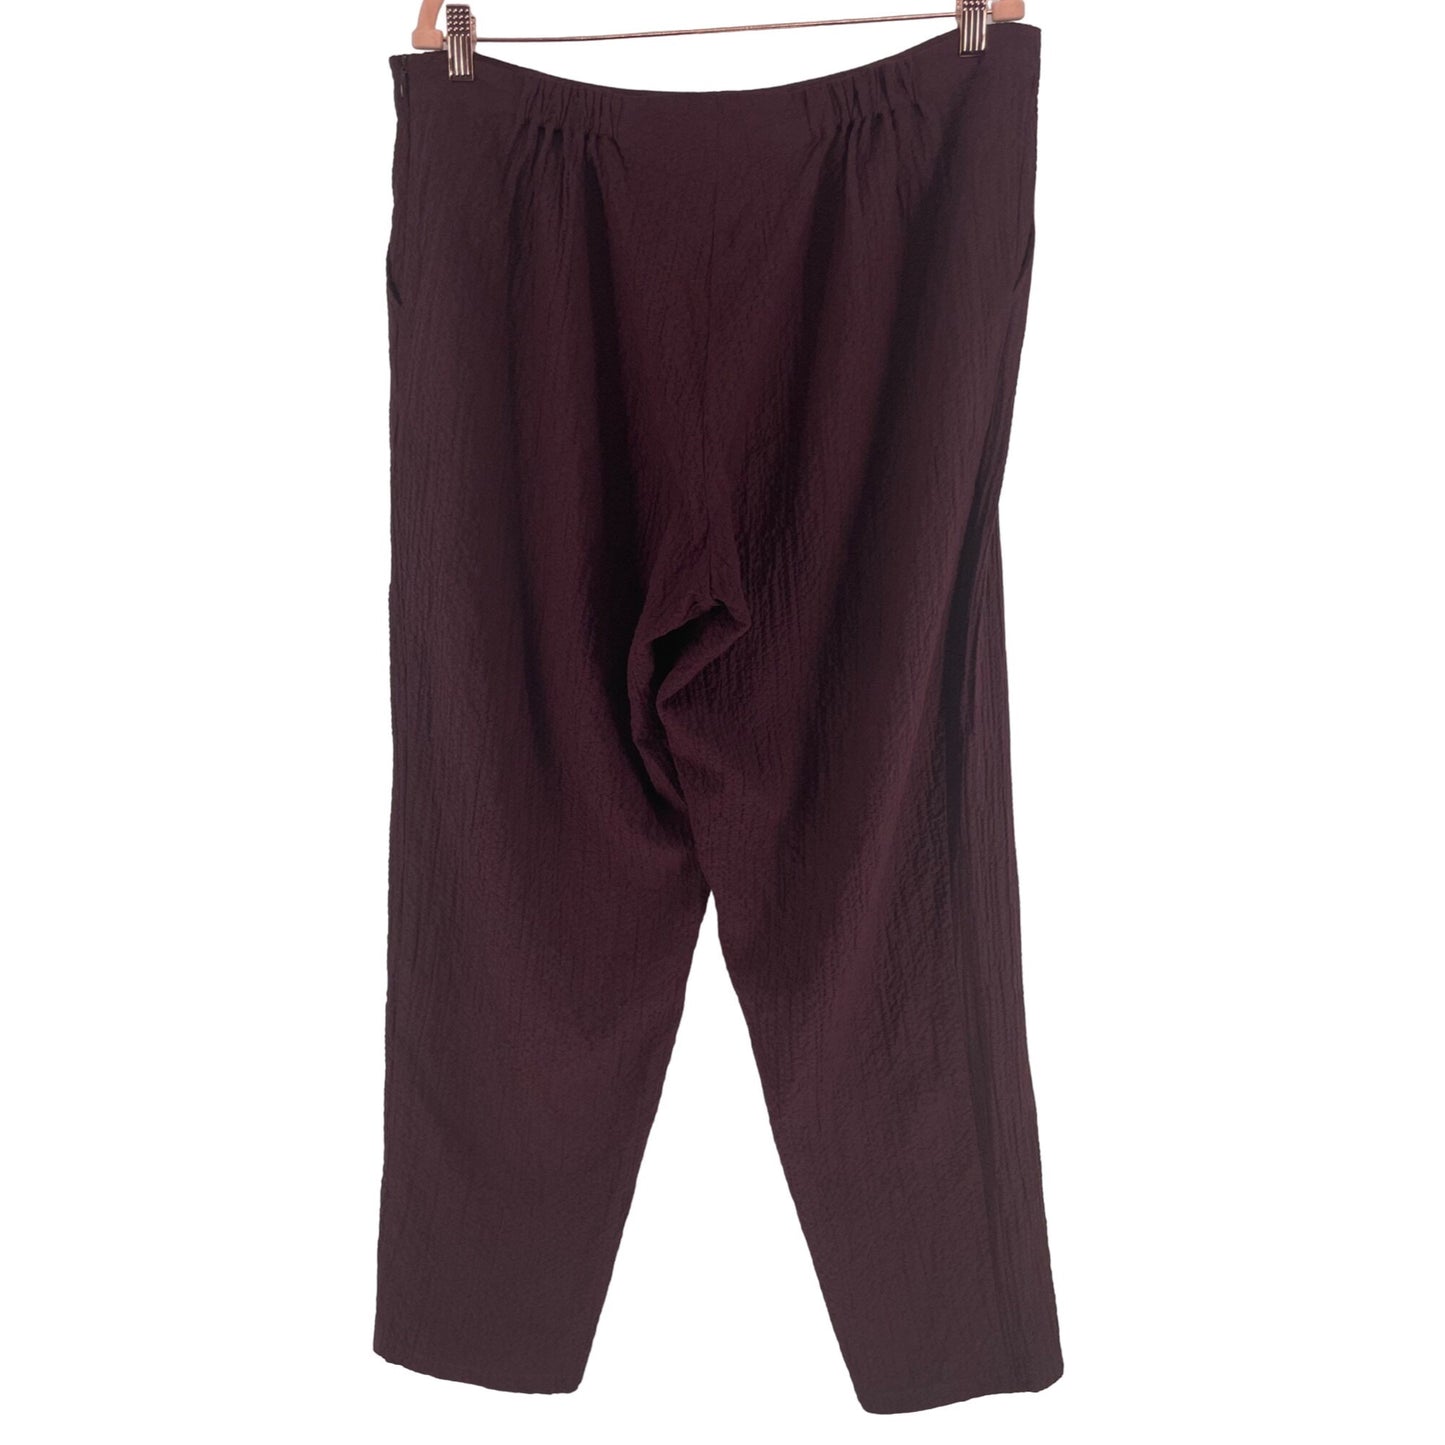 NWT Habitat Women's Size XL Maroon/Burgundy Pants